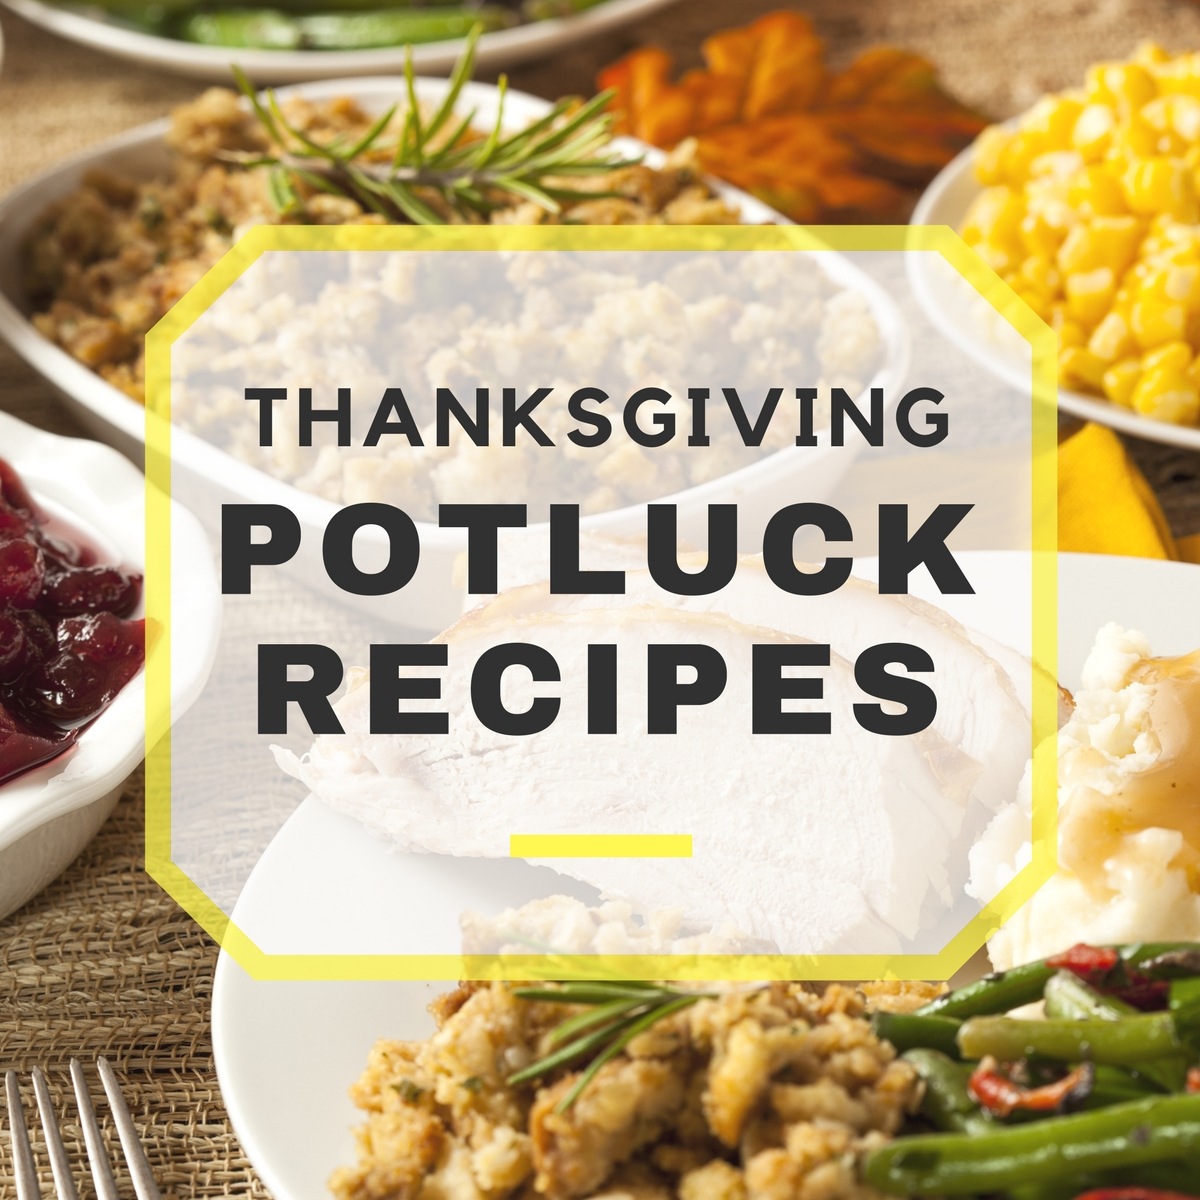 10 Tasty Thanksgiving Potluck Recipes